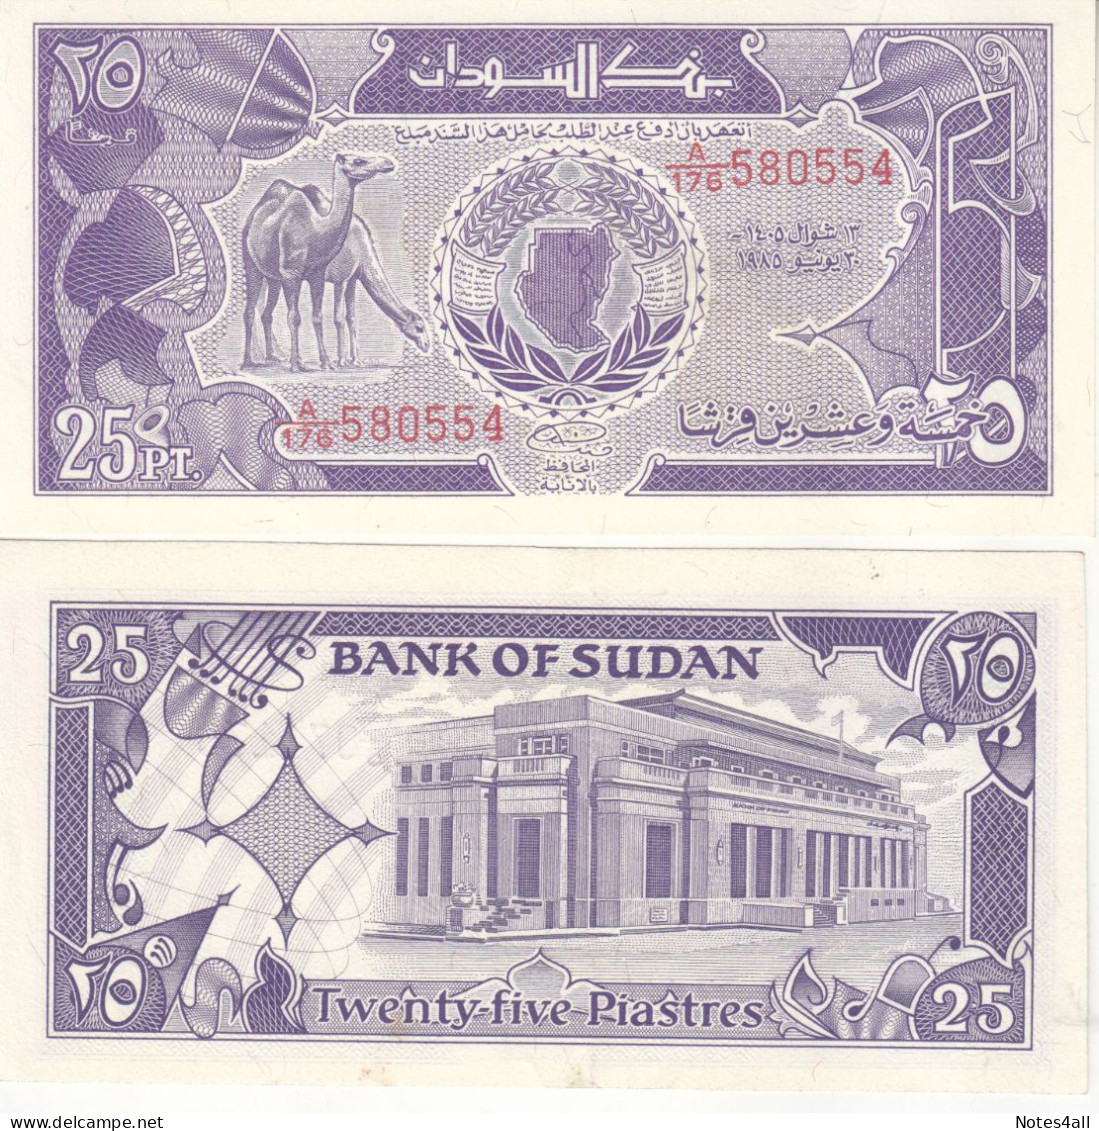 SUDAN 25 PT PIASTRES 1985 P-30 Au/UNC - Soedan